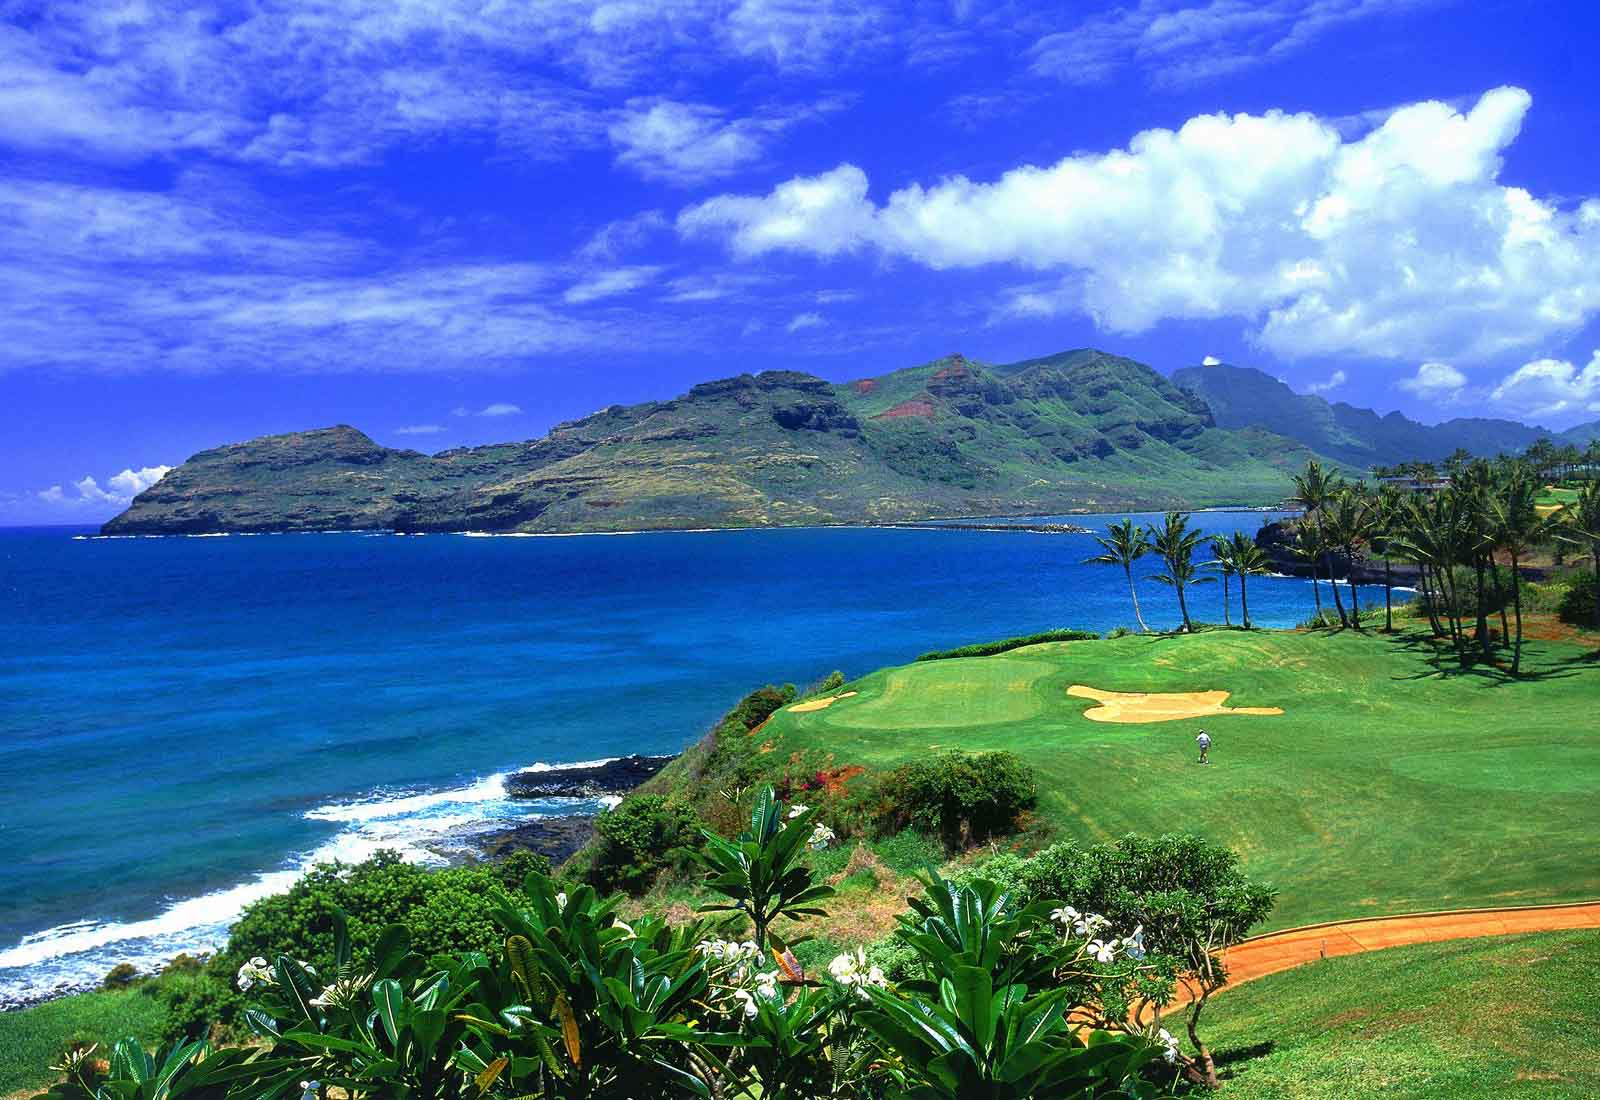 夏威夷最美风景图片